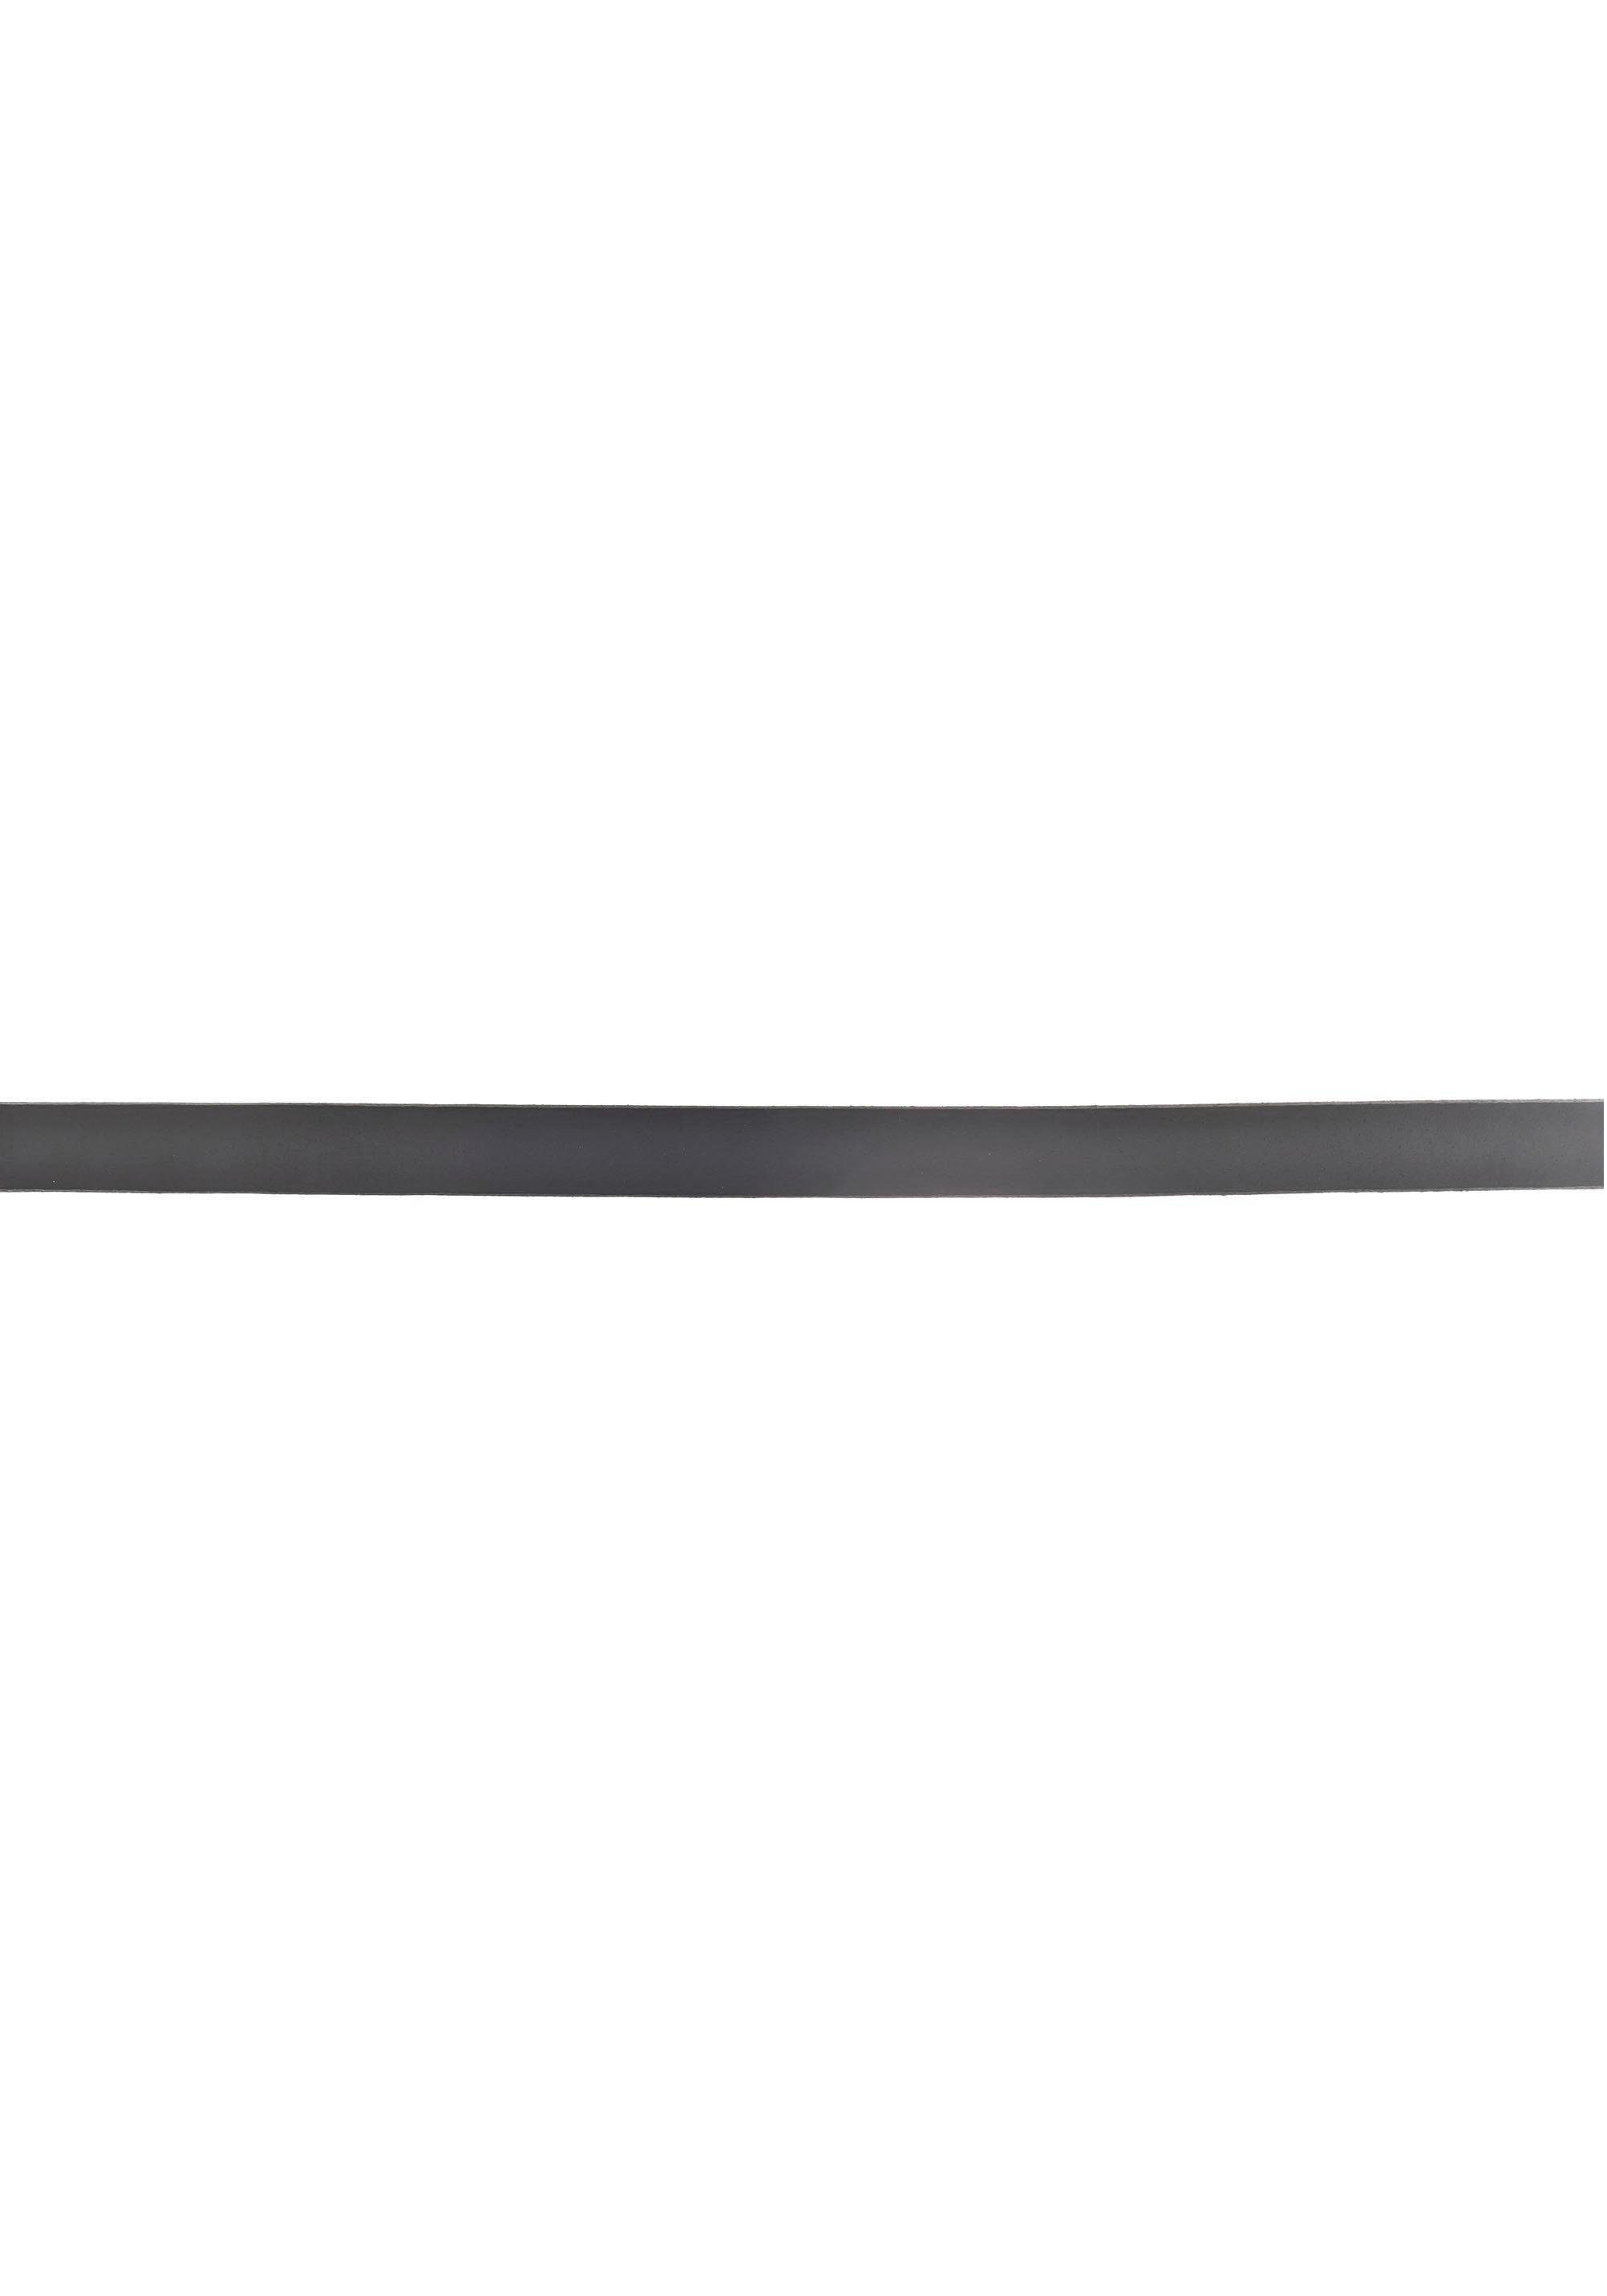 Farbbrillanz Vanzetti Ledergürtel schwarz mit Vollrindleder hoher